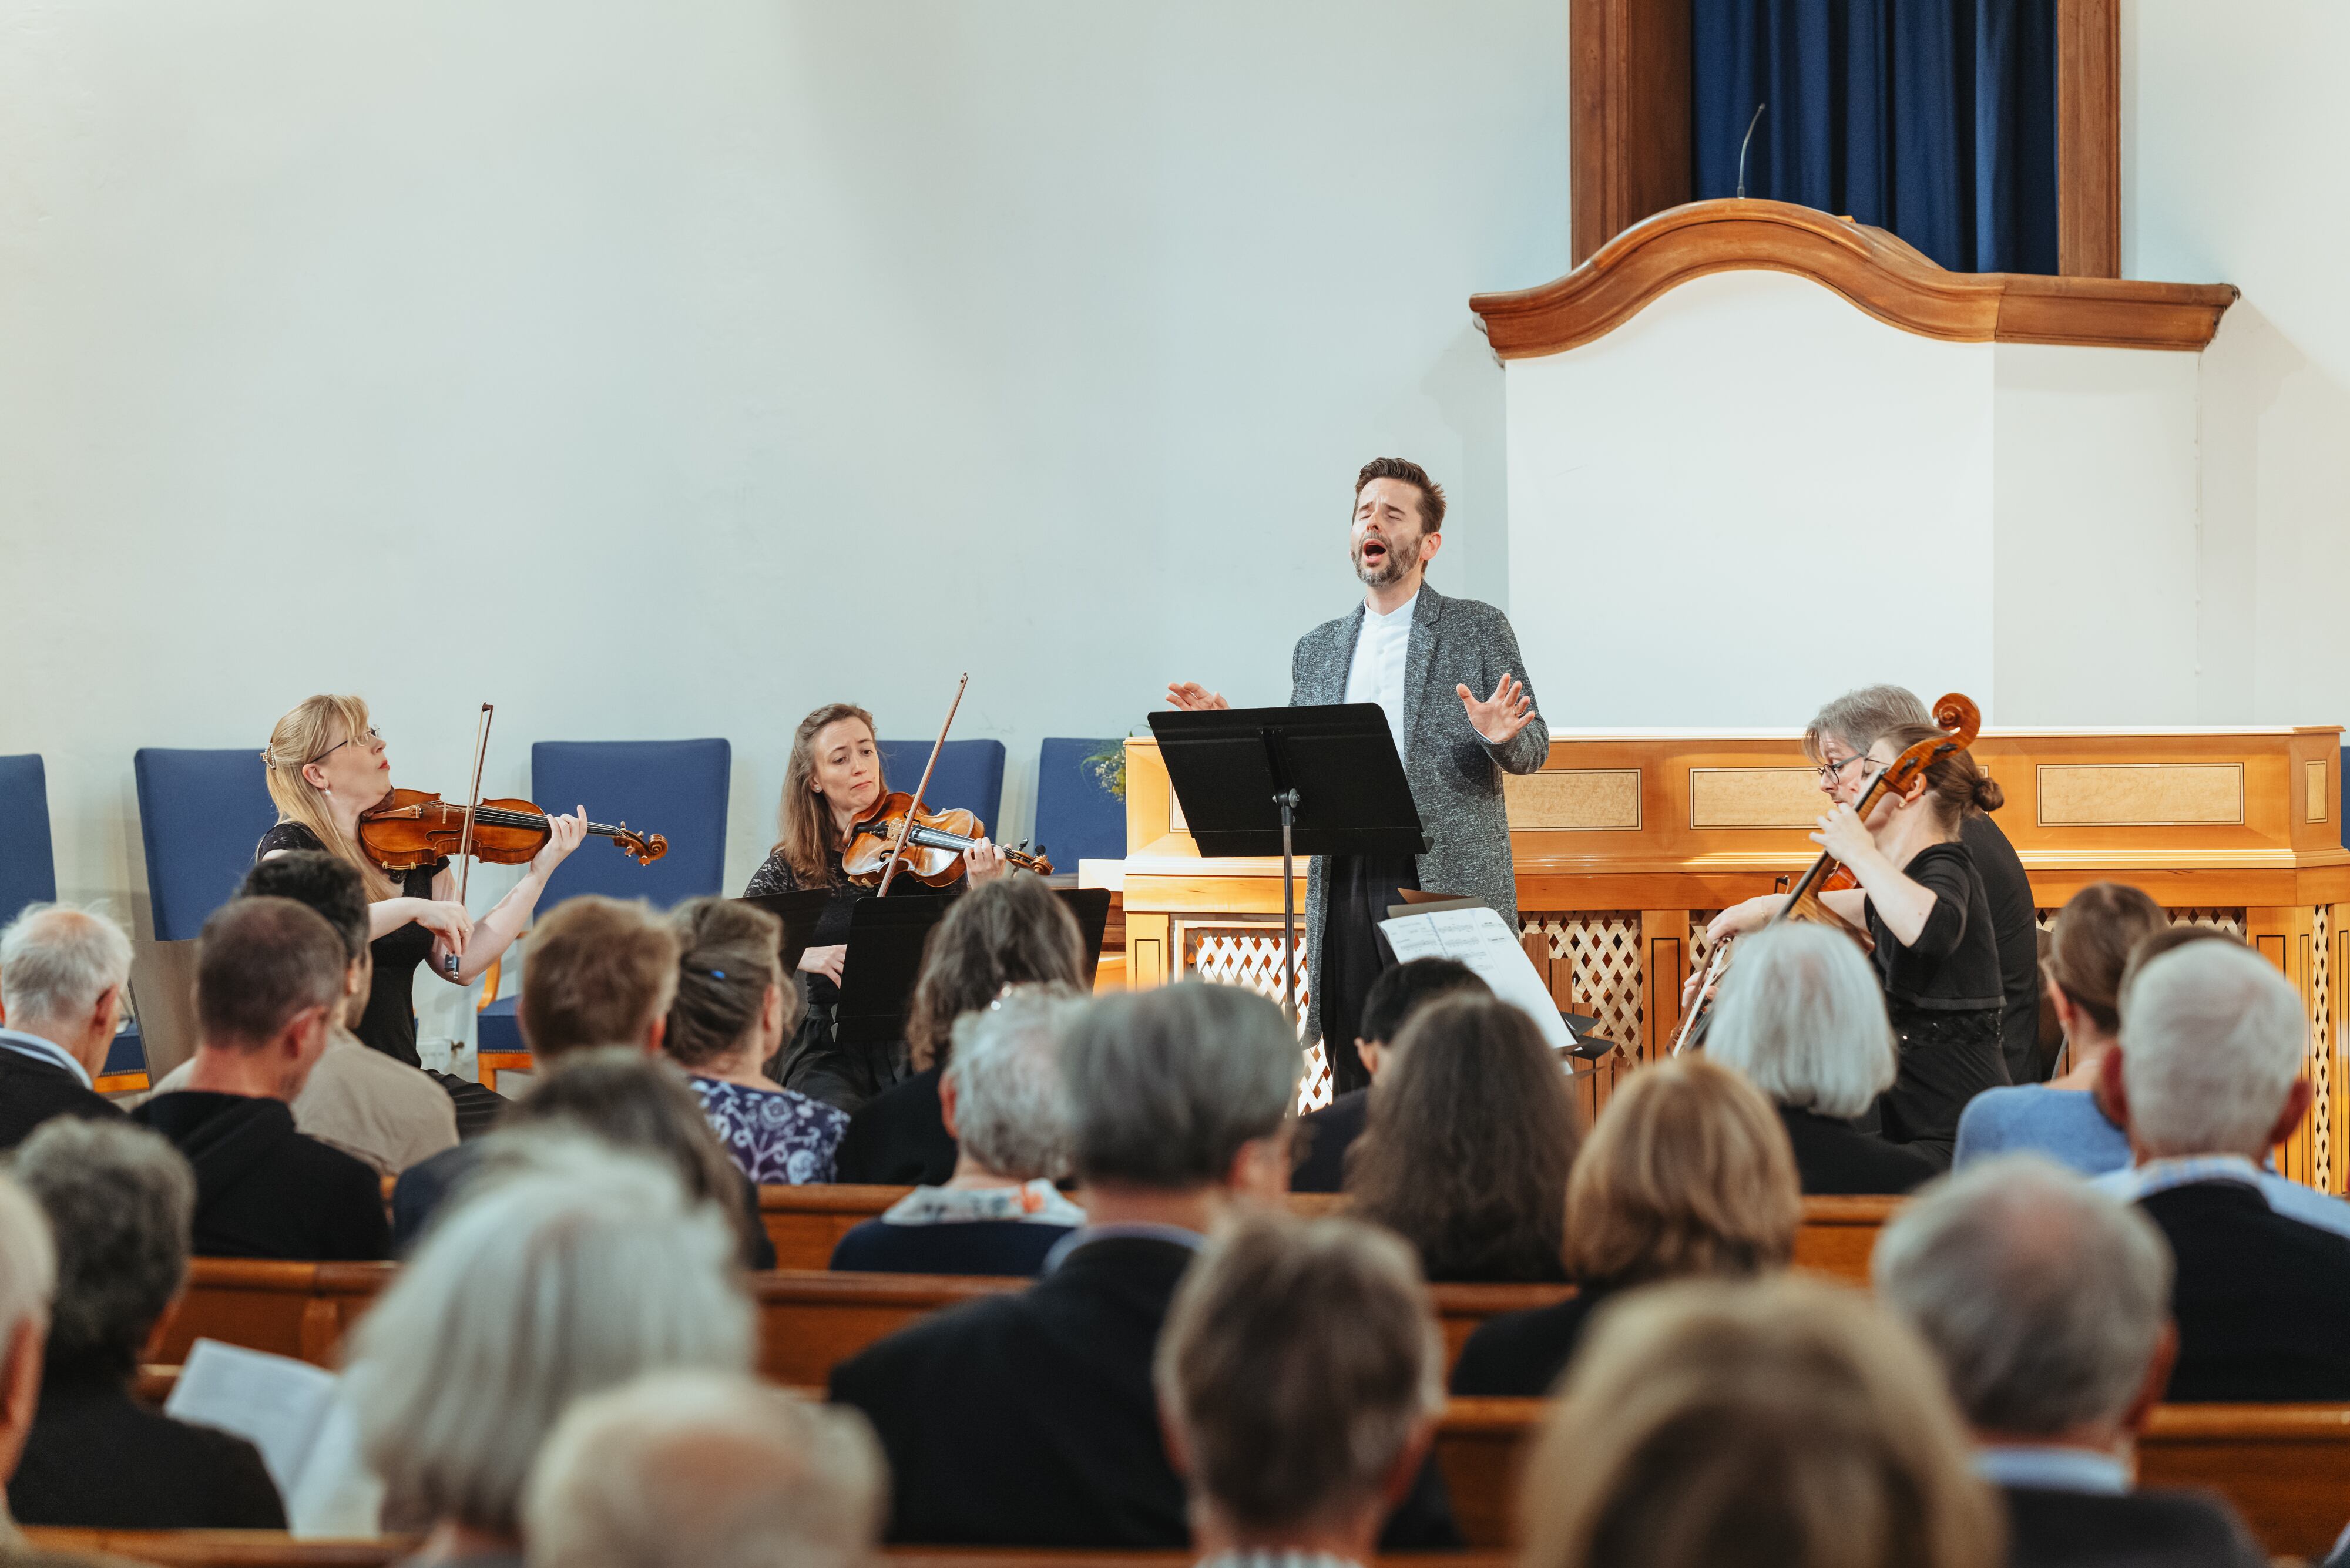 El tenor Daniel Johannsen y el Cuarteto Atalante, en su interpretación conjunta de canciones de ‘Winterreise’ de Schubert y arias de Bach en la Evangelische Reformierte Kirche de Leipzig, el jueves por la tarde.